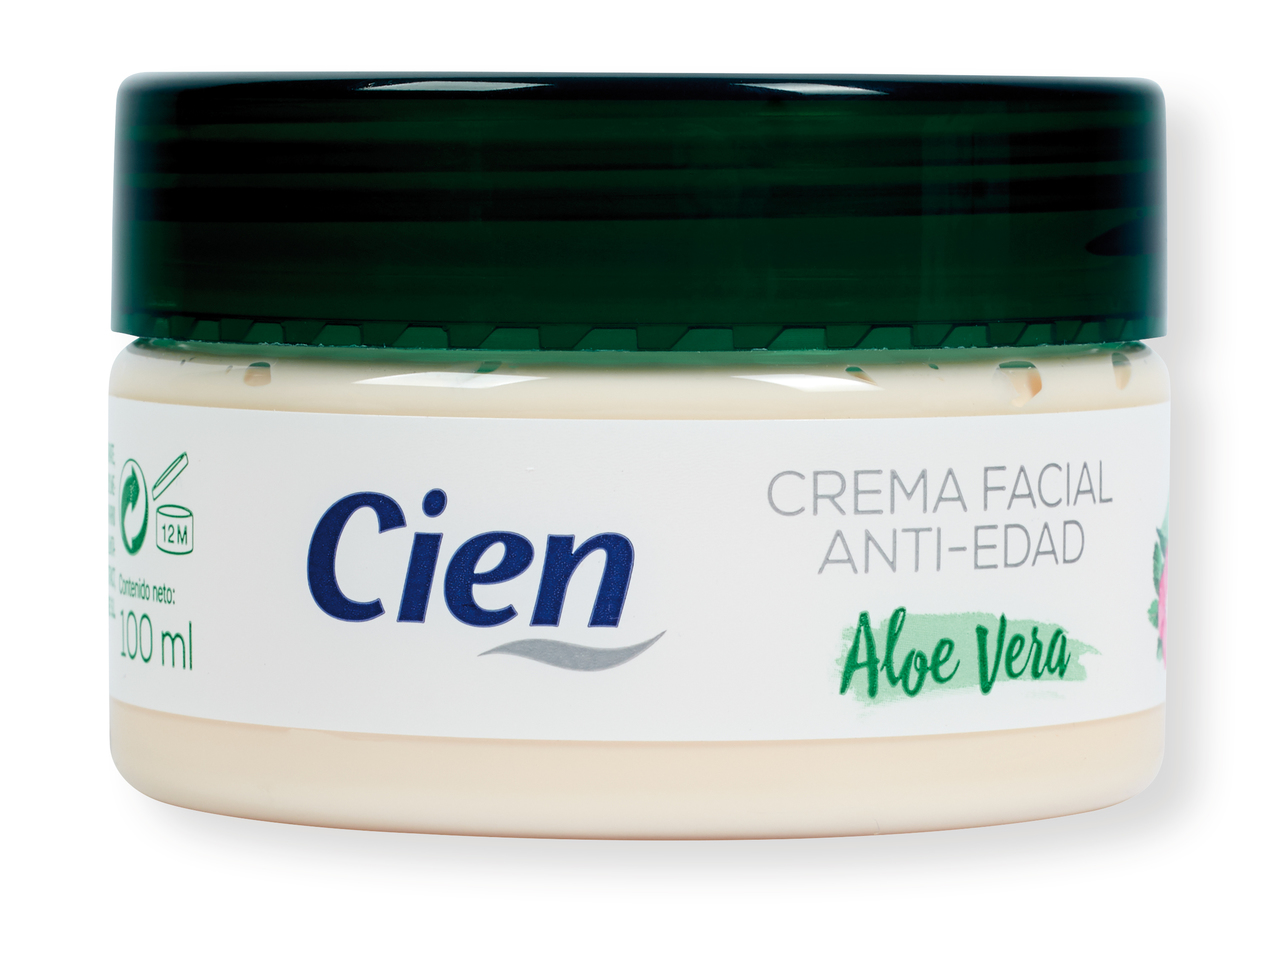 'Cien(R)' Crema facial antiedad